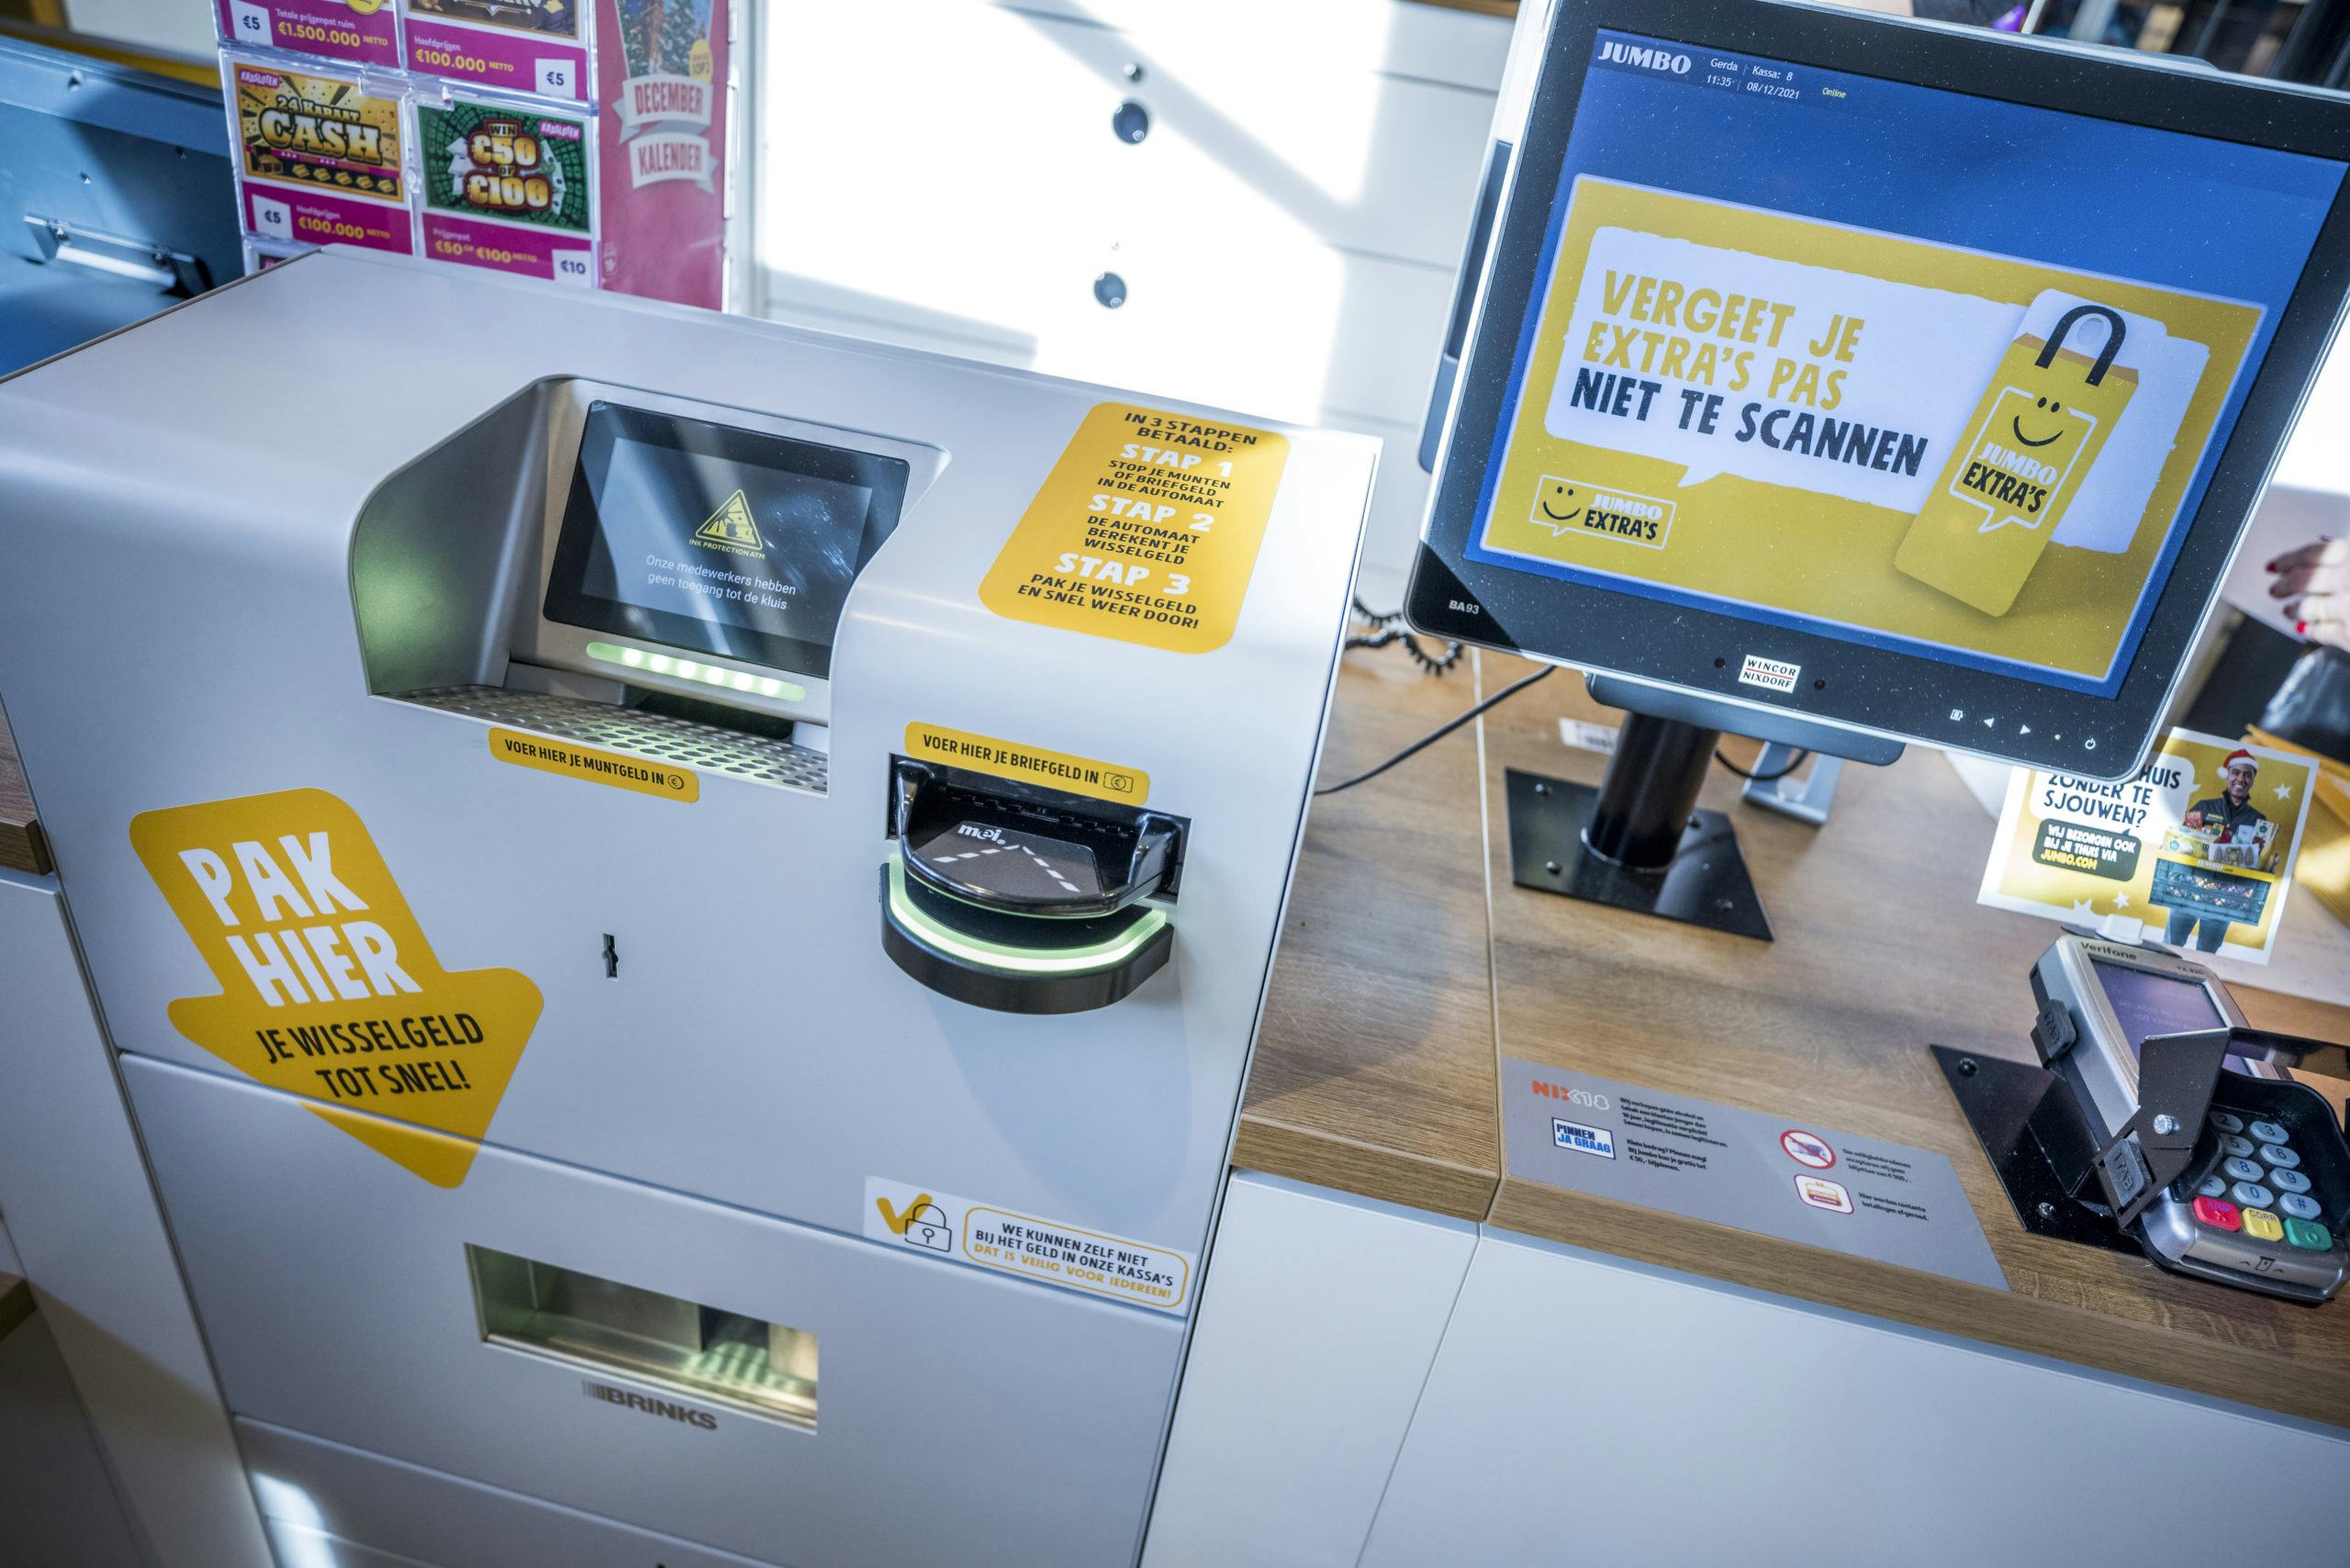 De kassa-automaat in de pas geopende Jumbo Sittard Stadion waar klanten contant kunnen betalen.  De machine geeft zelf wisselgeld terug. Foto: Marcel van Hoorn.